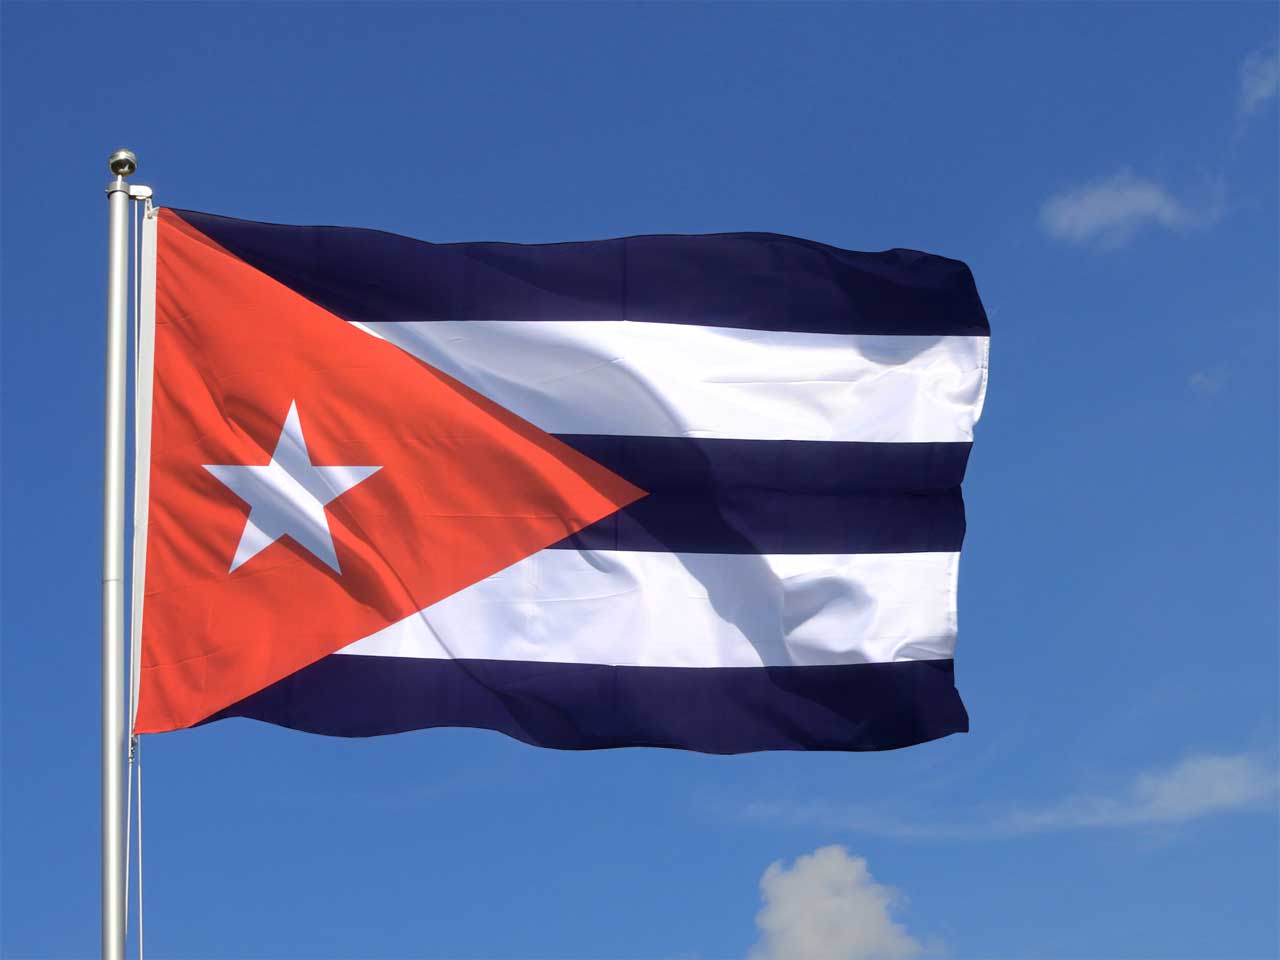 image drapeau de cuba